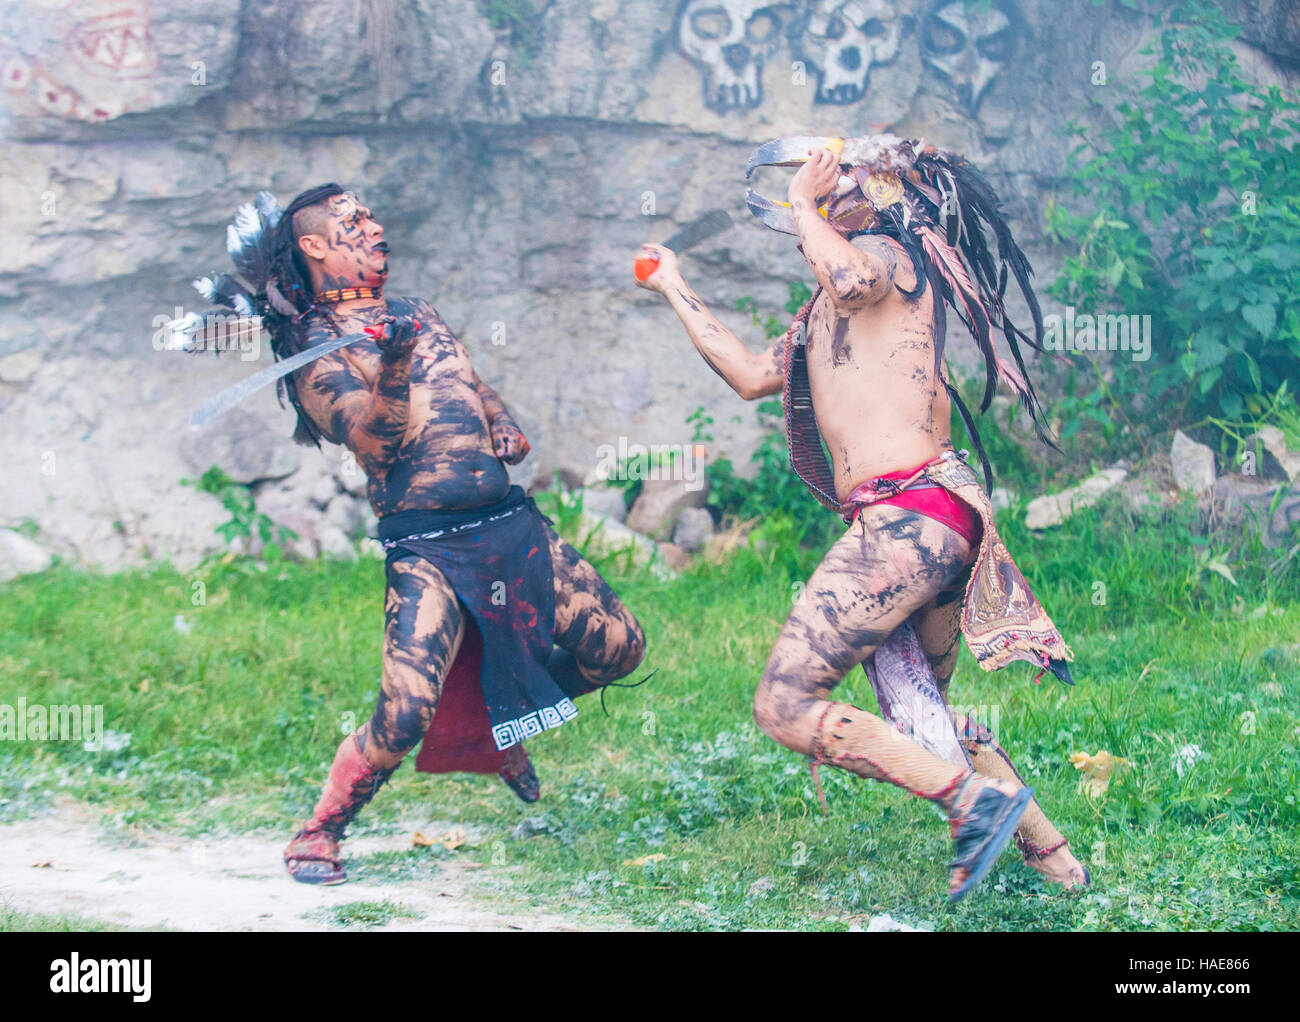 Deux autochtones américains dans une machette lutte pendant le festival de Valle del Maiz à San Miguel de Allende, Mexique. Banque D'Images